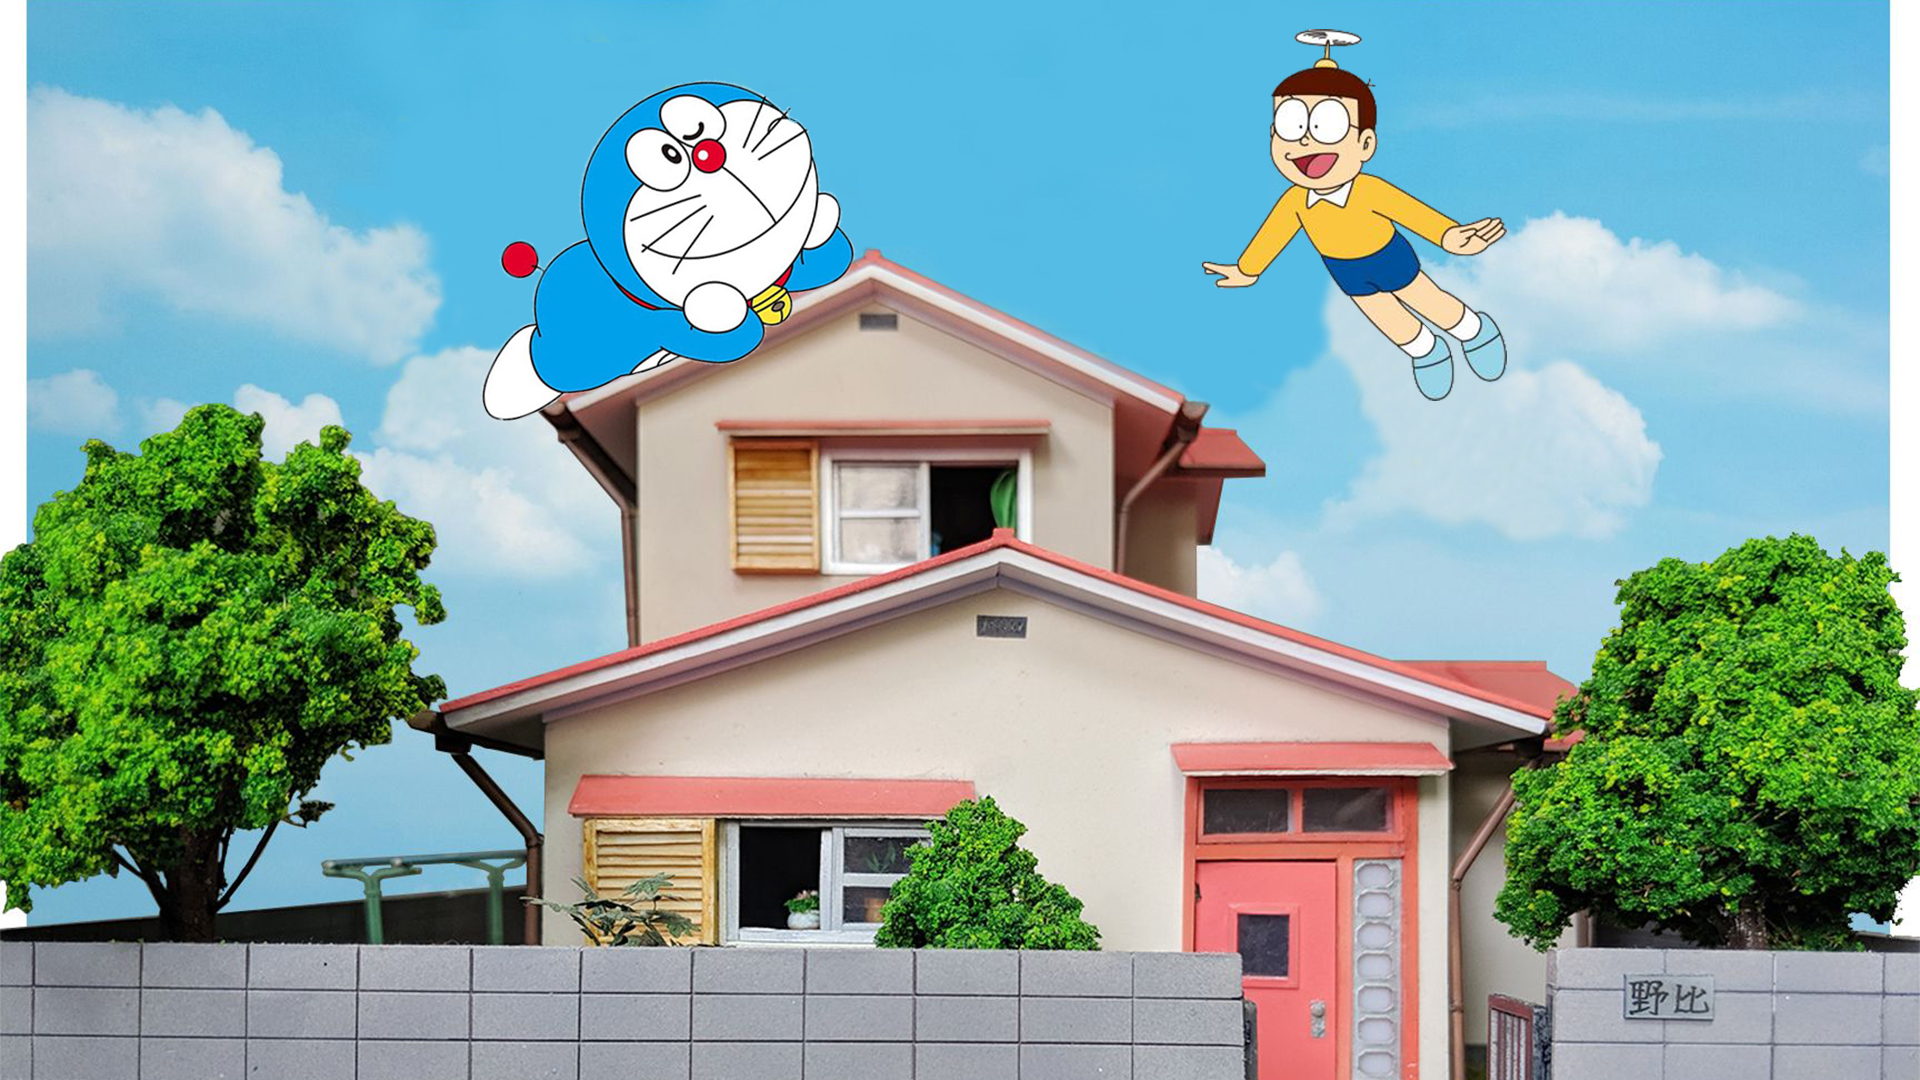 Tham quan ngôi nhà của Nobita dưới dạng mô hình 3D  Nobita Nobis  Residence  ĐÔRÊMON THÁI NGUYÊN  YouTube